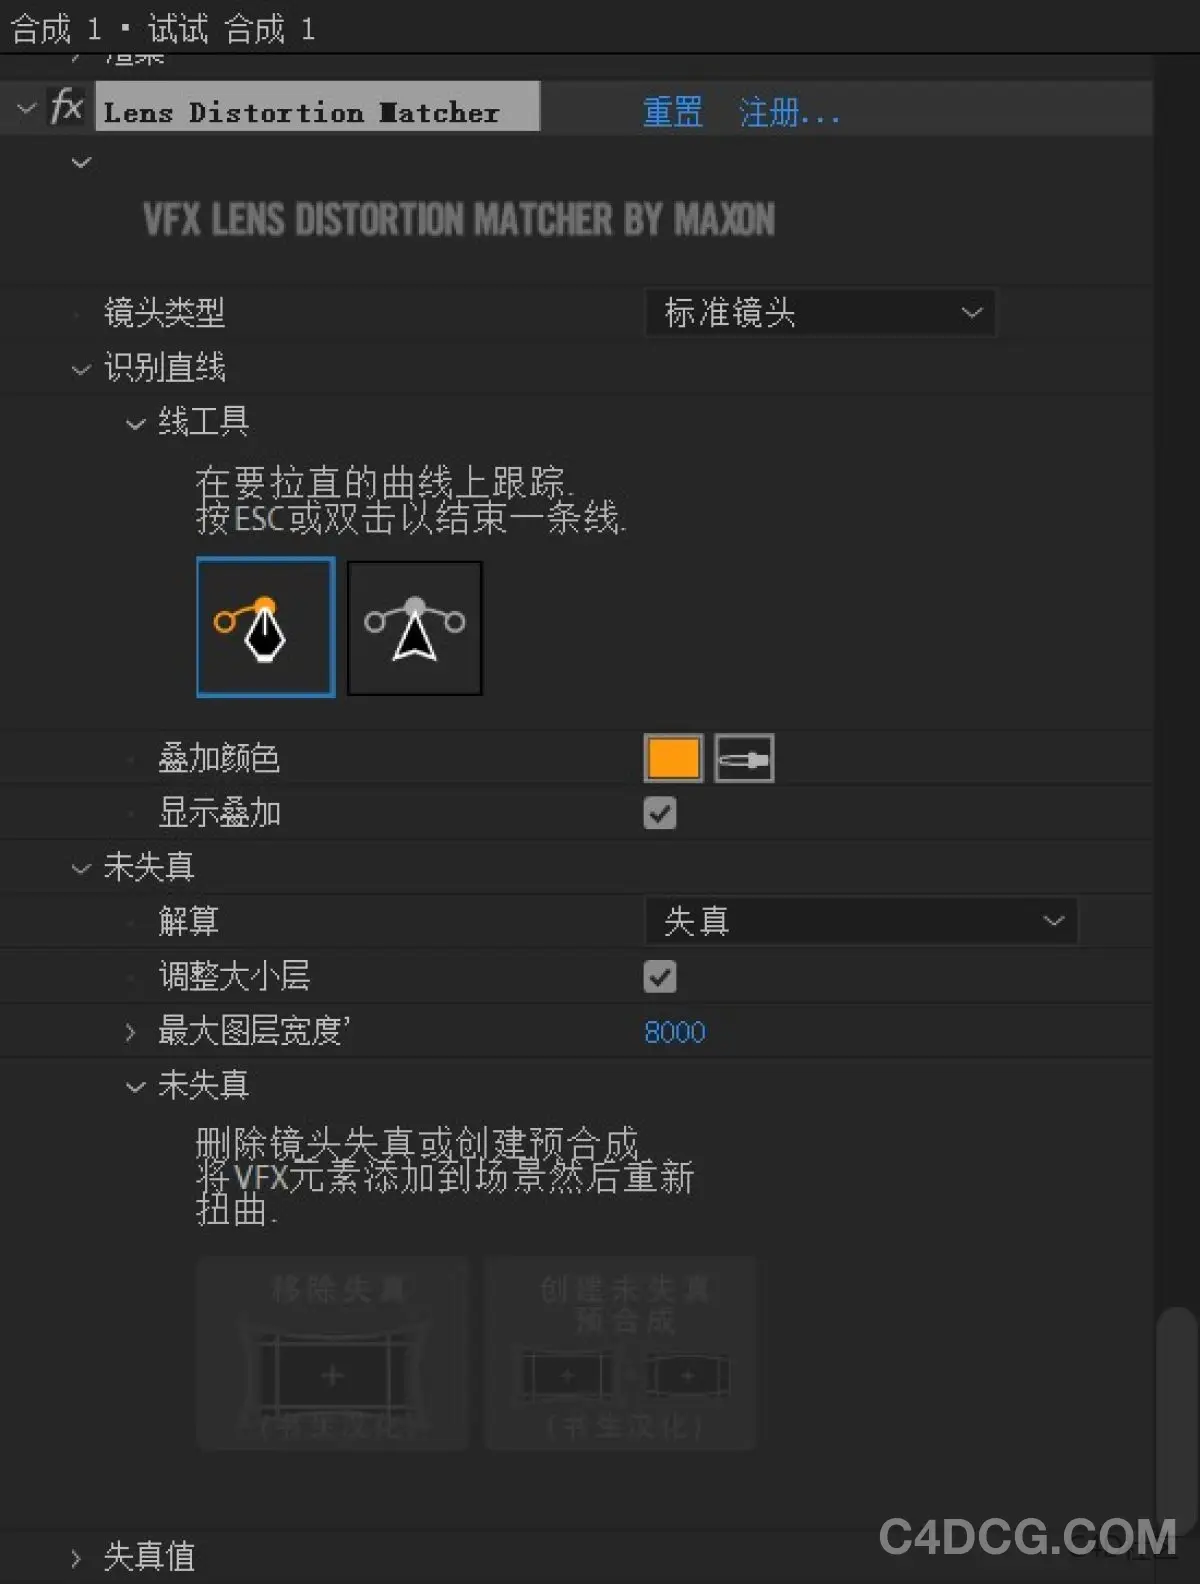 Lens Distortion Matcher